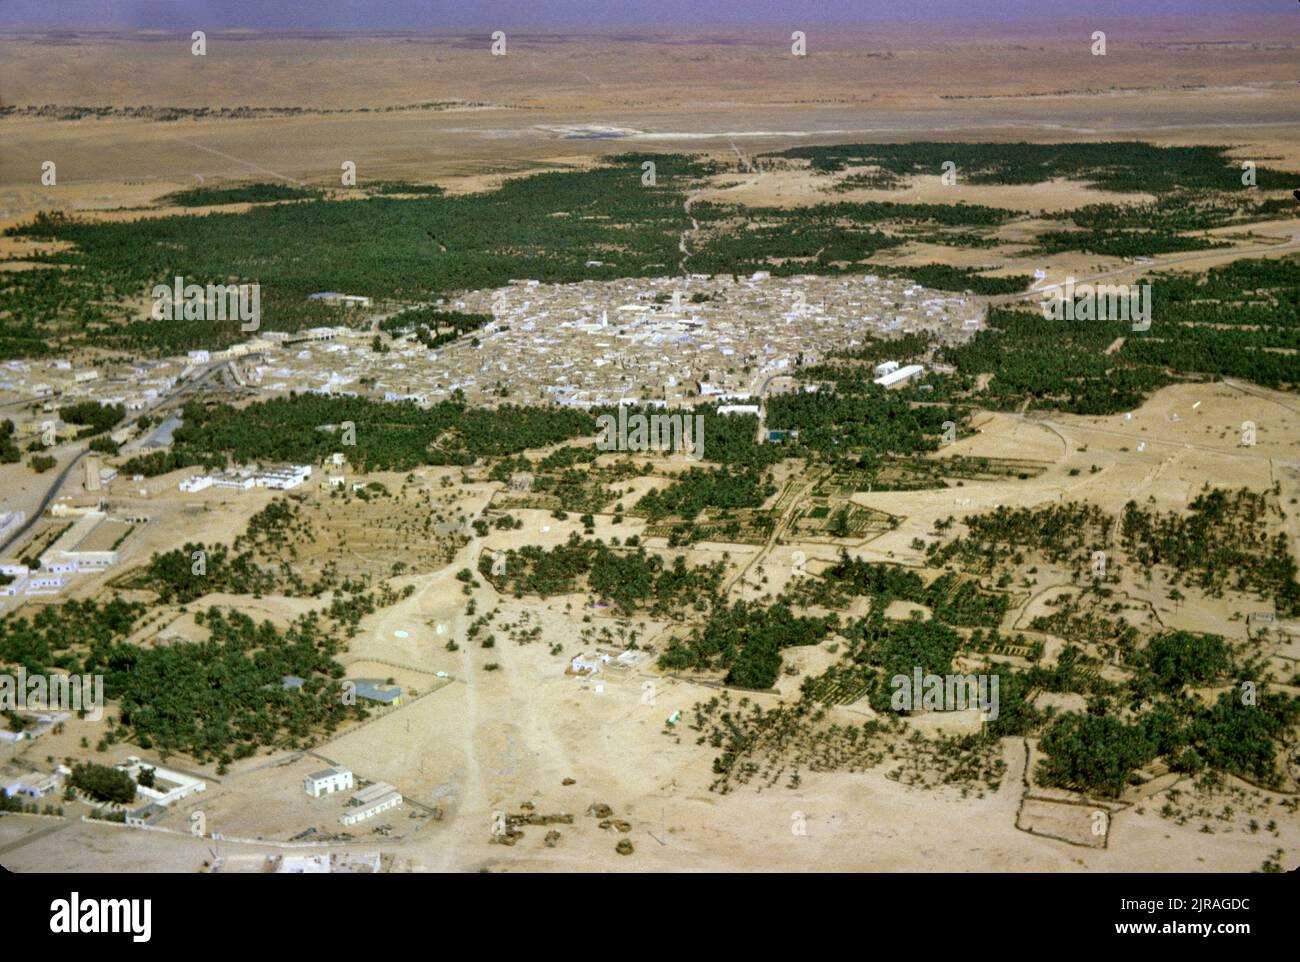 Algeria, Sahara Desert: aerial view of an oasis in the desert, 1963 Desert, trees and village Stock Photo